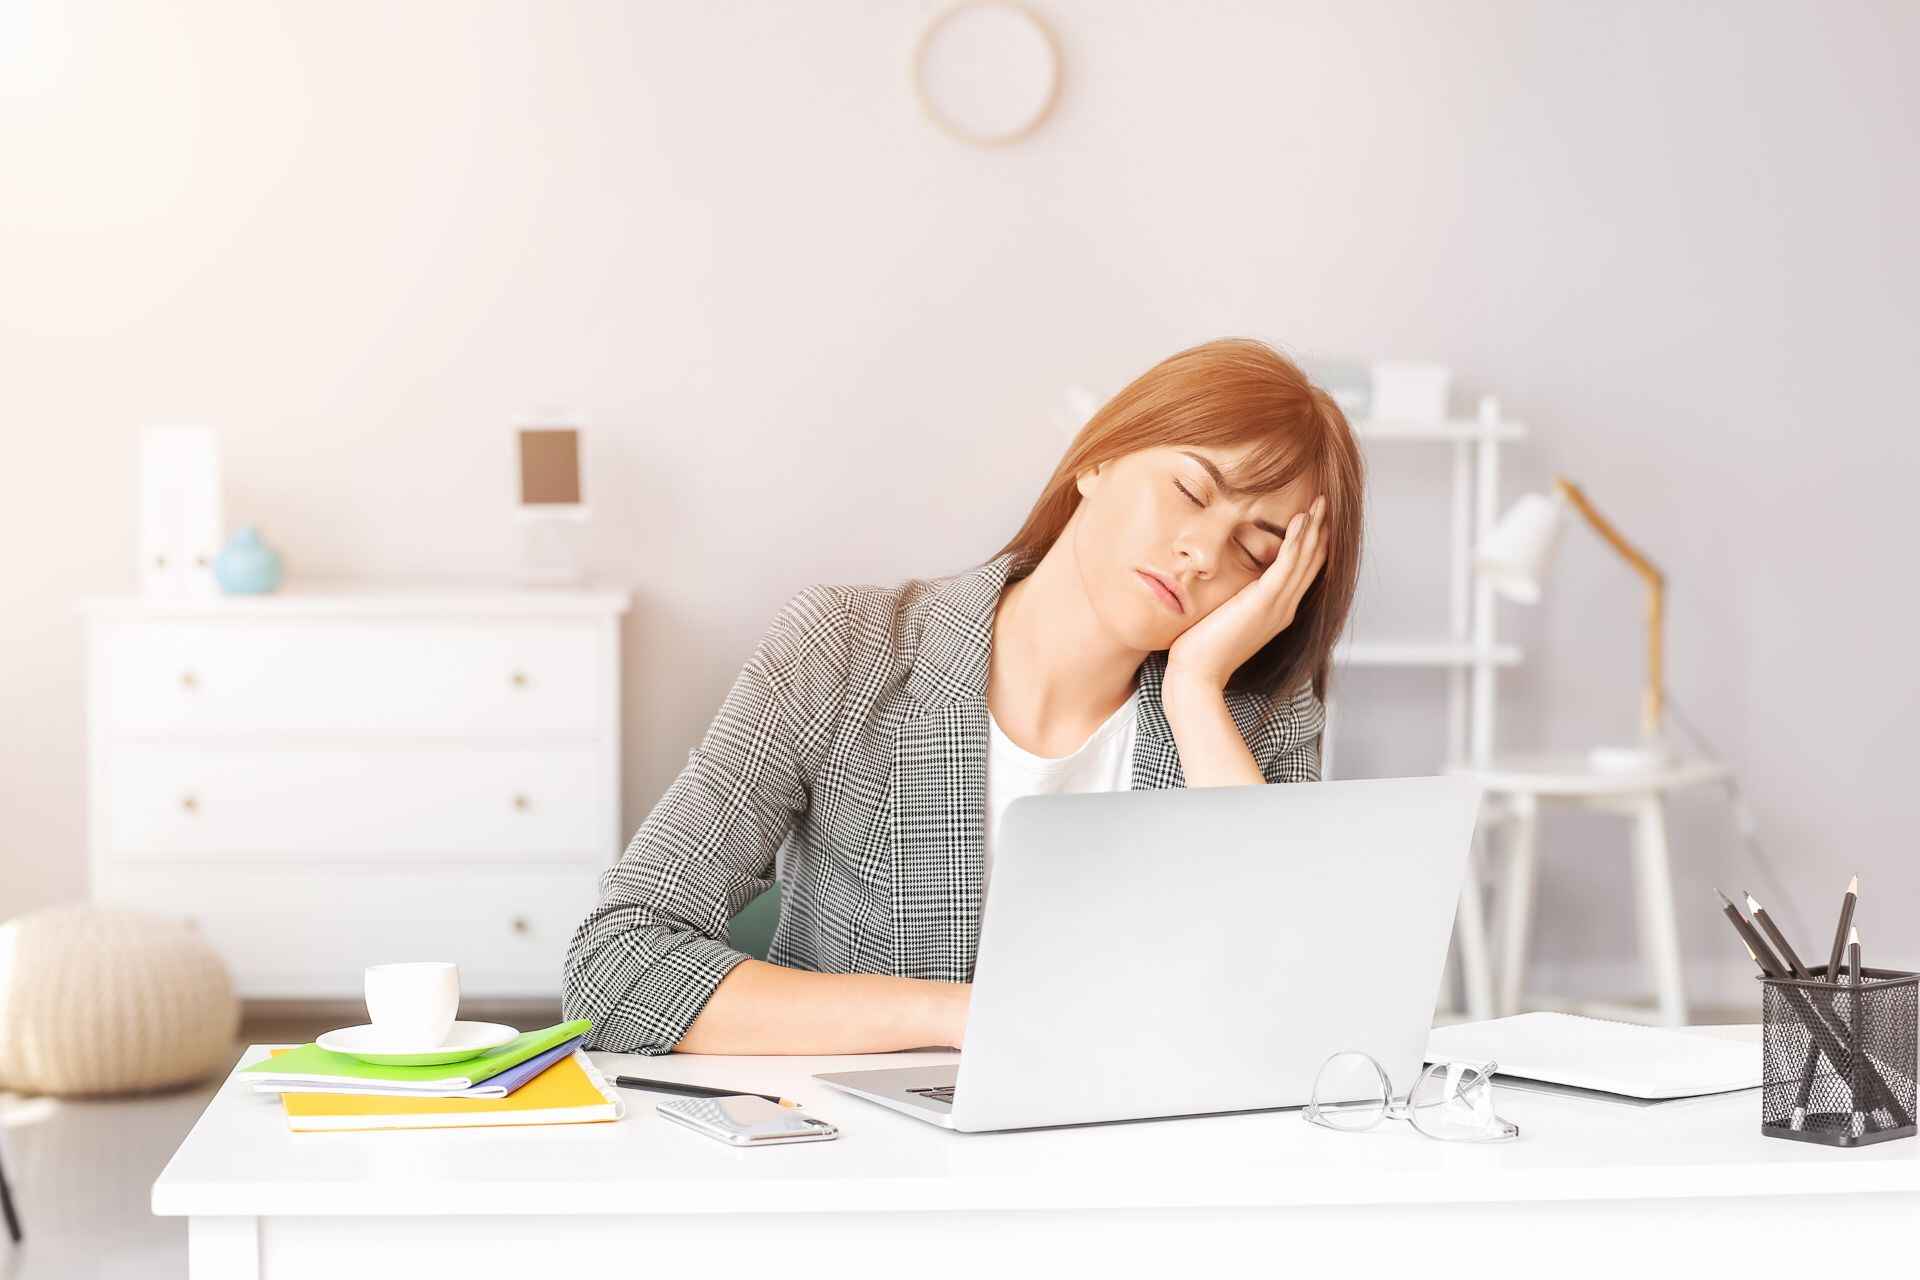 Lavoro sedentario: c'è una sostanziale differenza tra stanchezza fisica e mentale